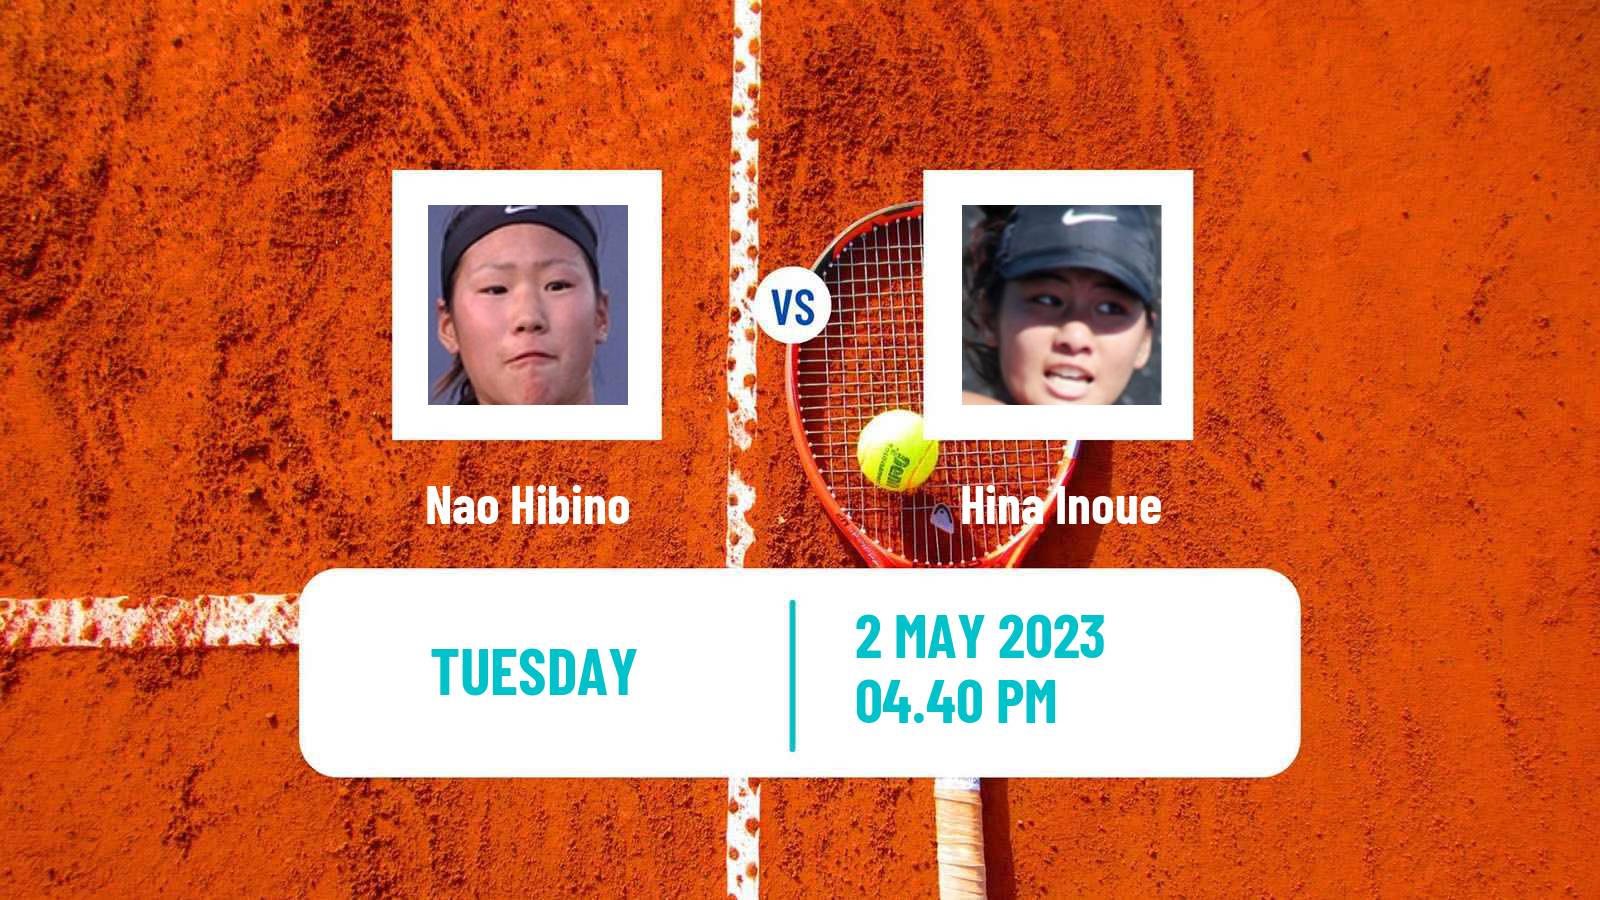 Tennis ITF Tournaments Nao Hibino - Hina Inoue